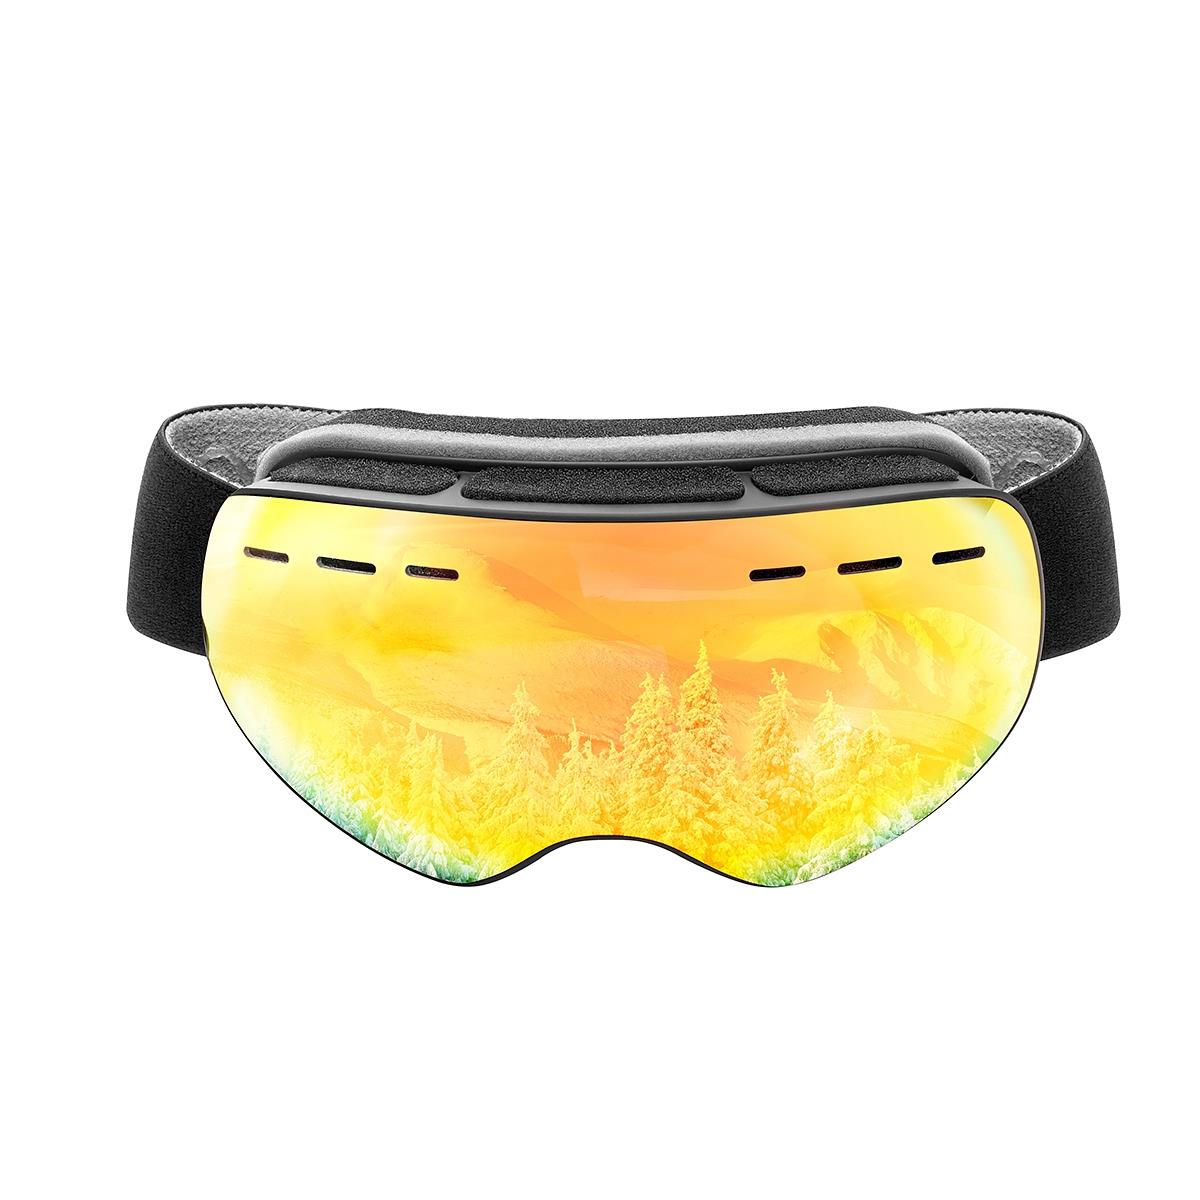 Очки горнолыжные HS-HX-029 Helios очки для плавания взрослые uv защита